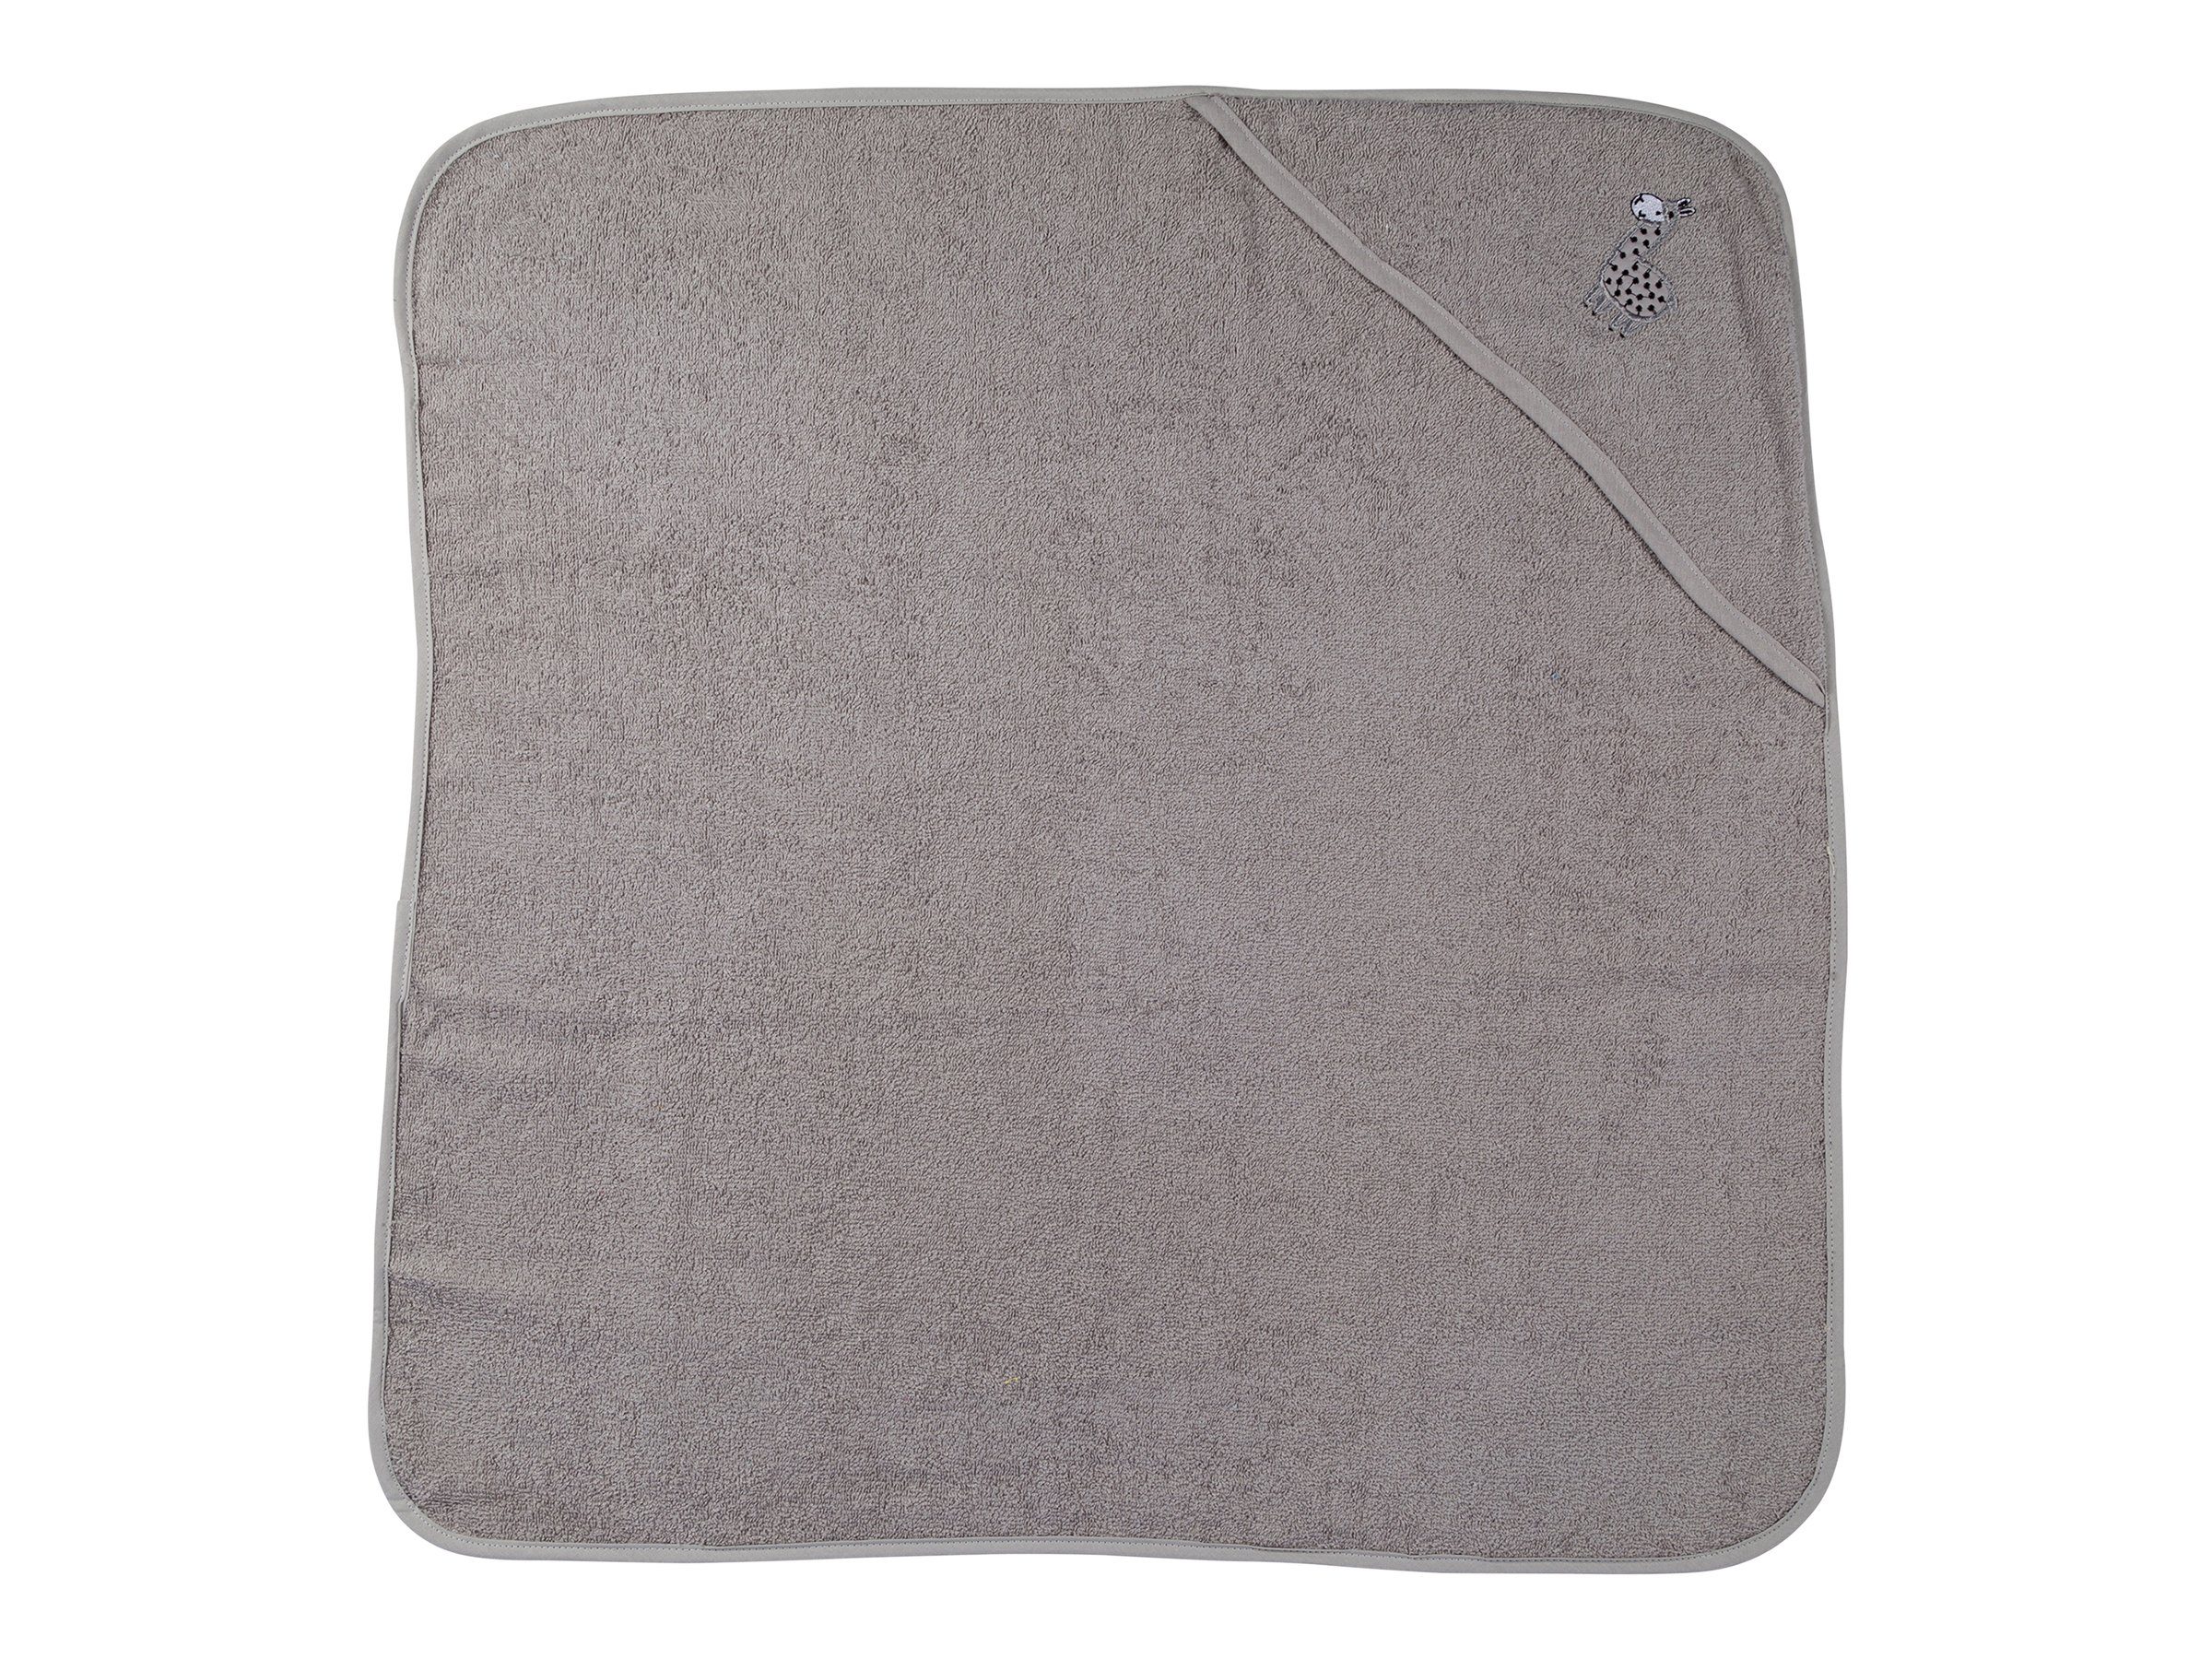 Kuscheliges Grau cm, Farben 80x80 Kapuzenhandtuch für Clinotest Handtuch verschiedene Babys,